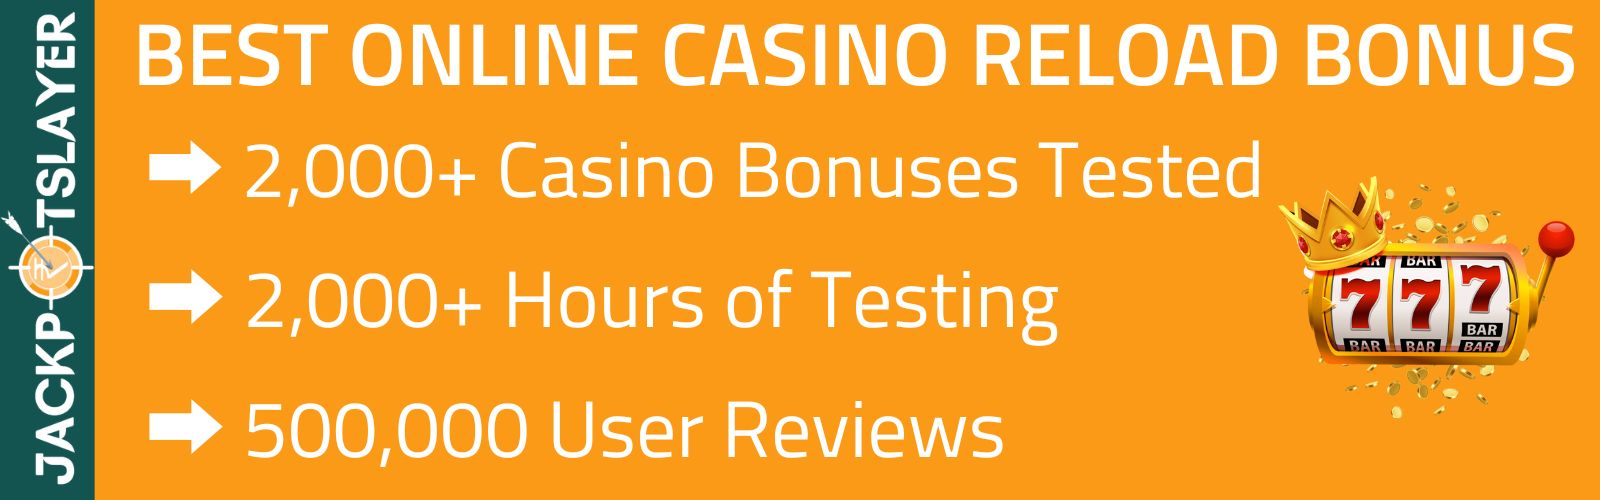 Casino reload bonus